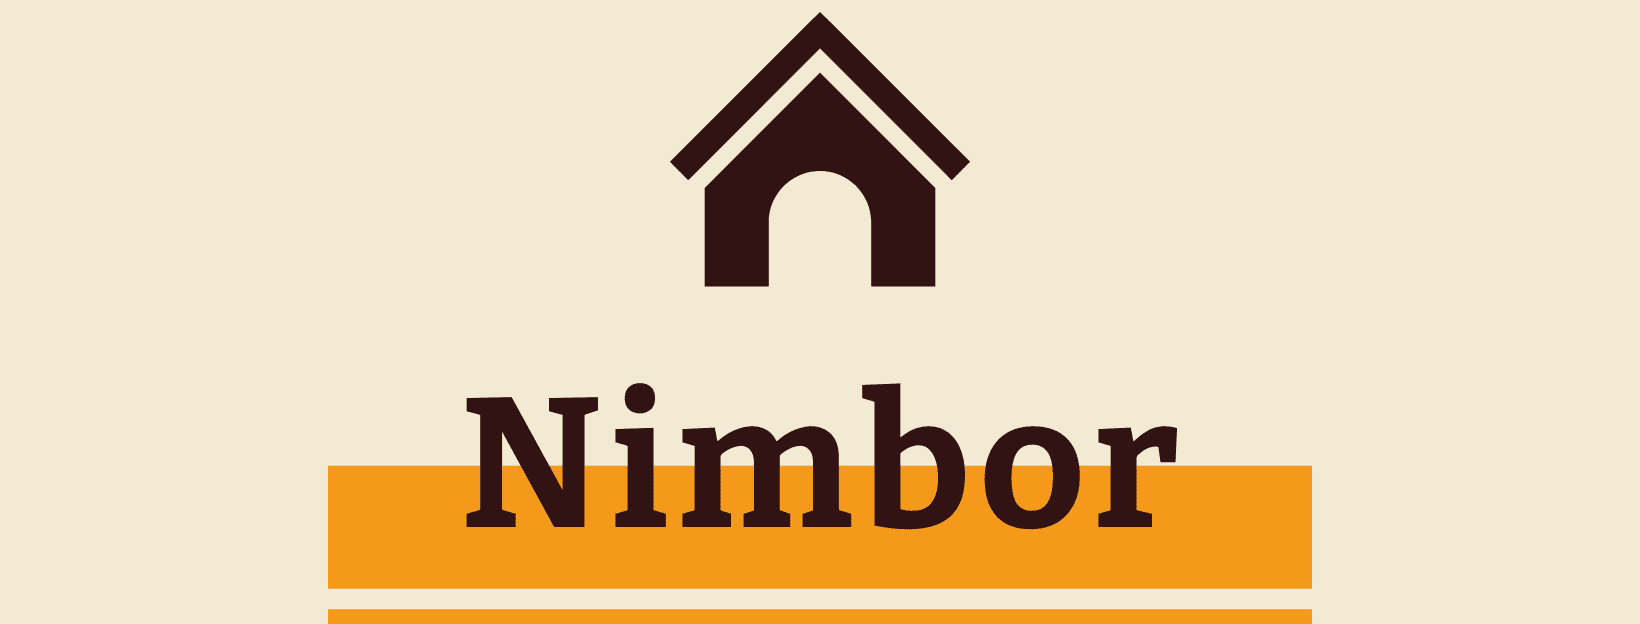 Nimbor